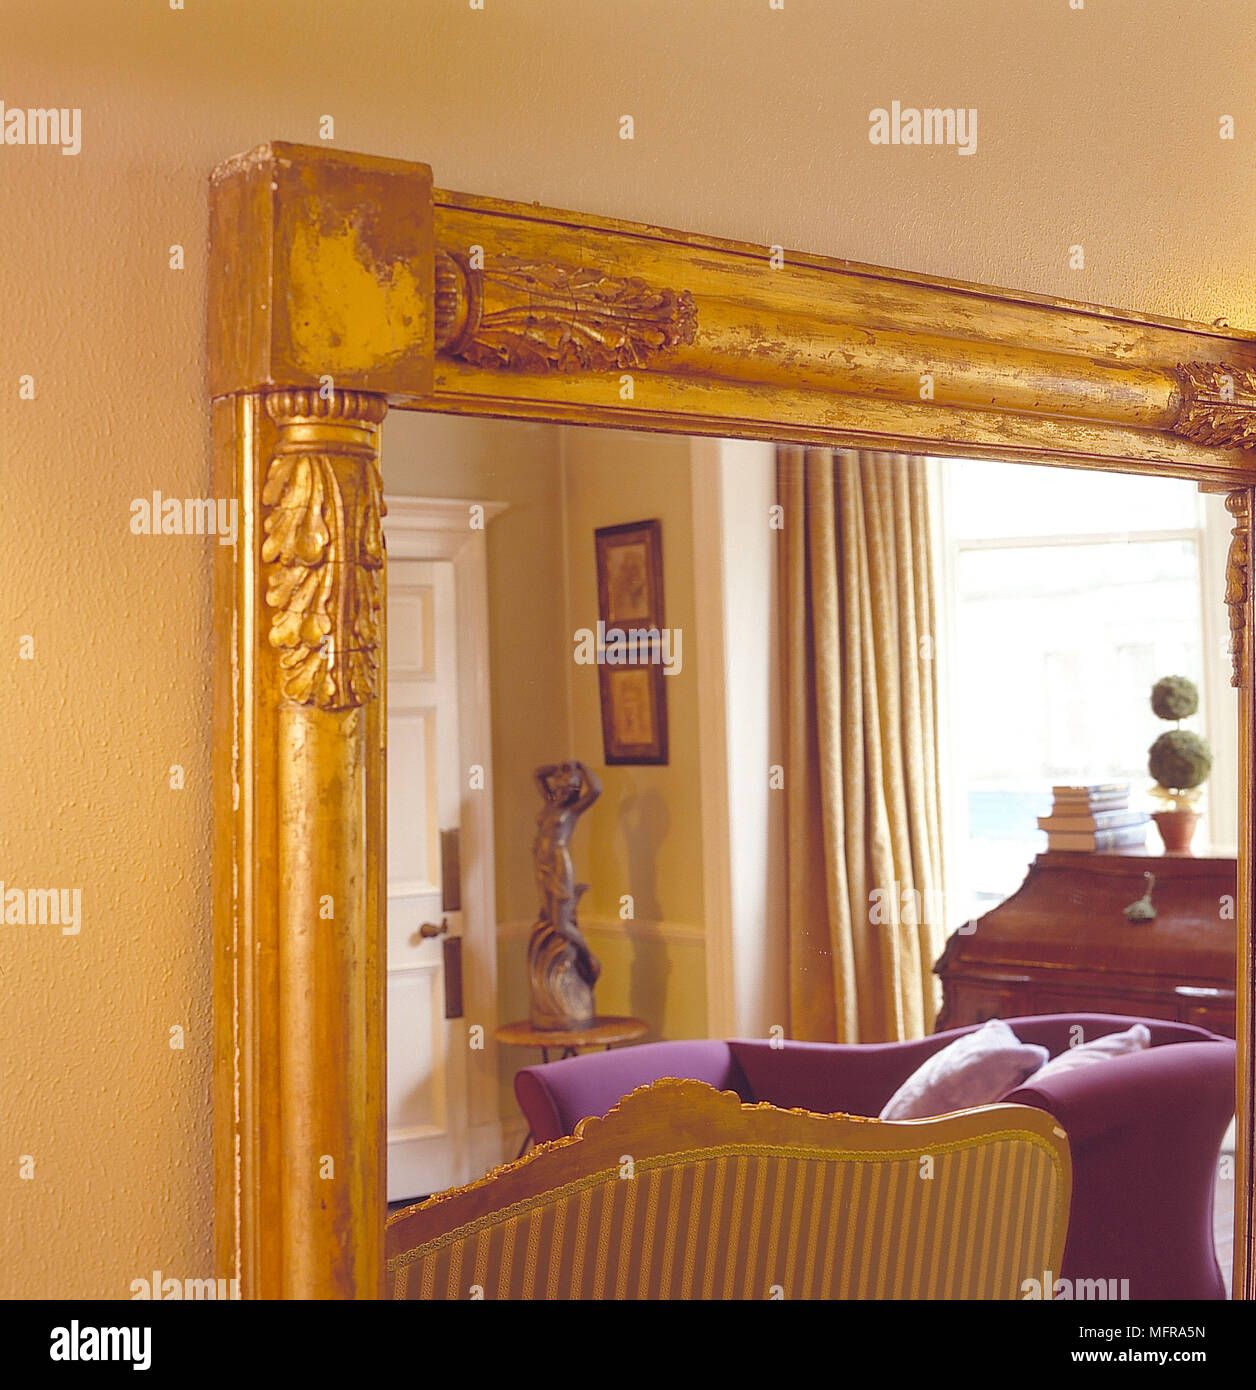 Wohnzimmer detail Wände gelb gold Spiegelbild statue Präsidium Fenster Vorhänge Innenräume Zimmer lila couch Zeitraum tradiitonal Stockfoto